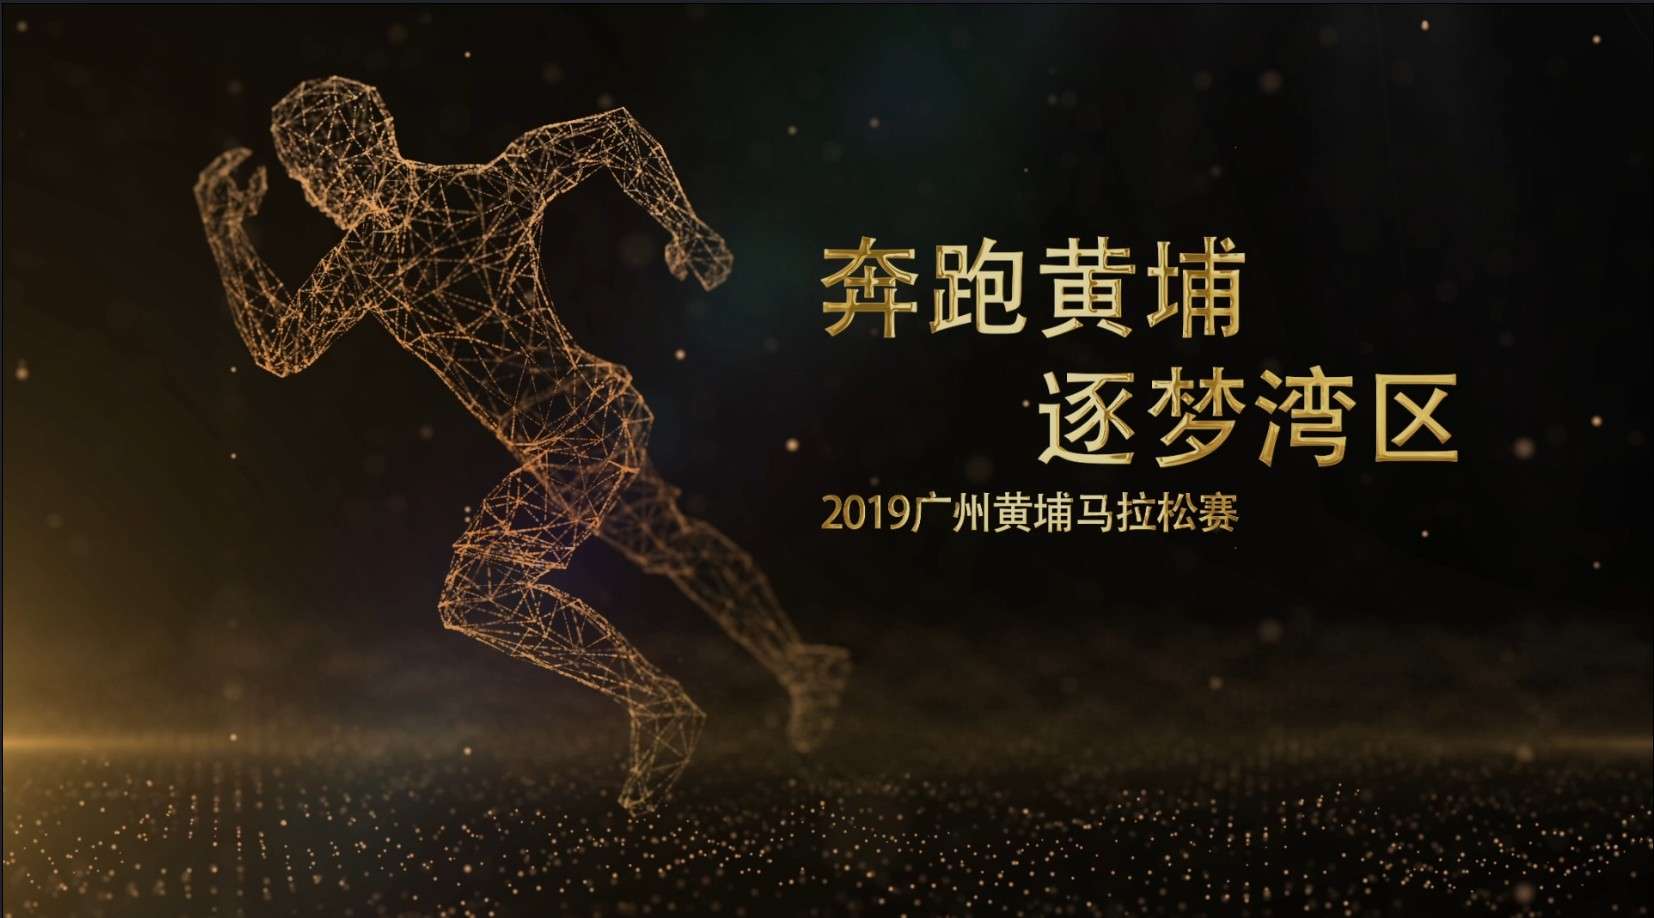 2019广州黄埔马拉松赛志愿者服务